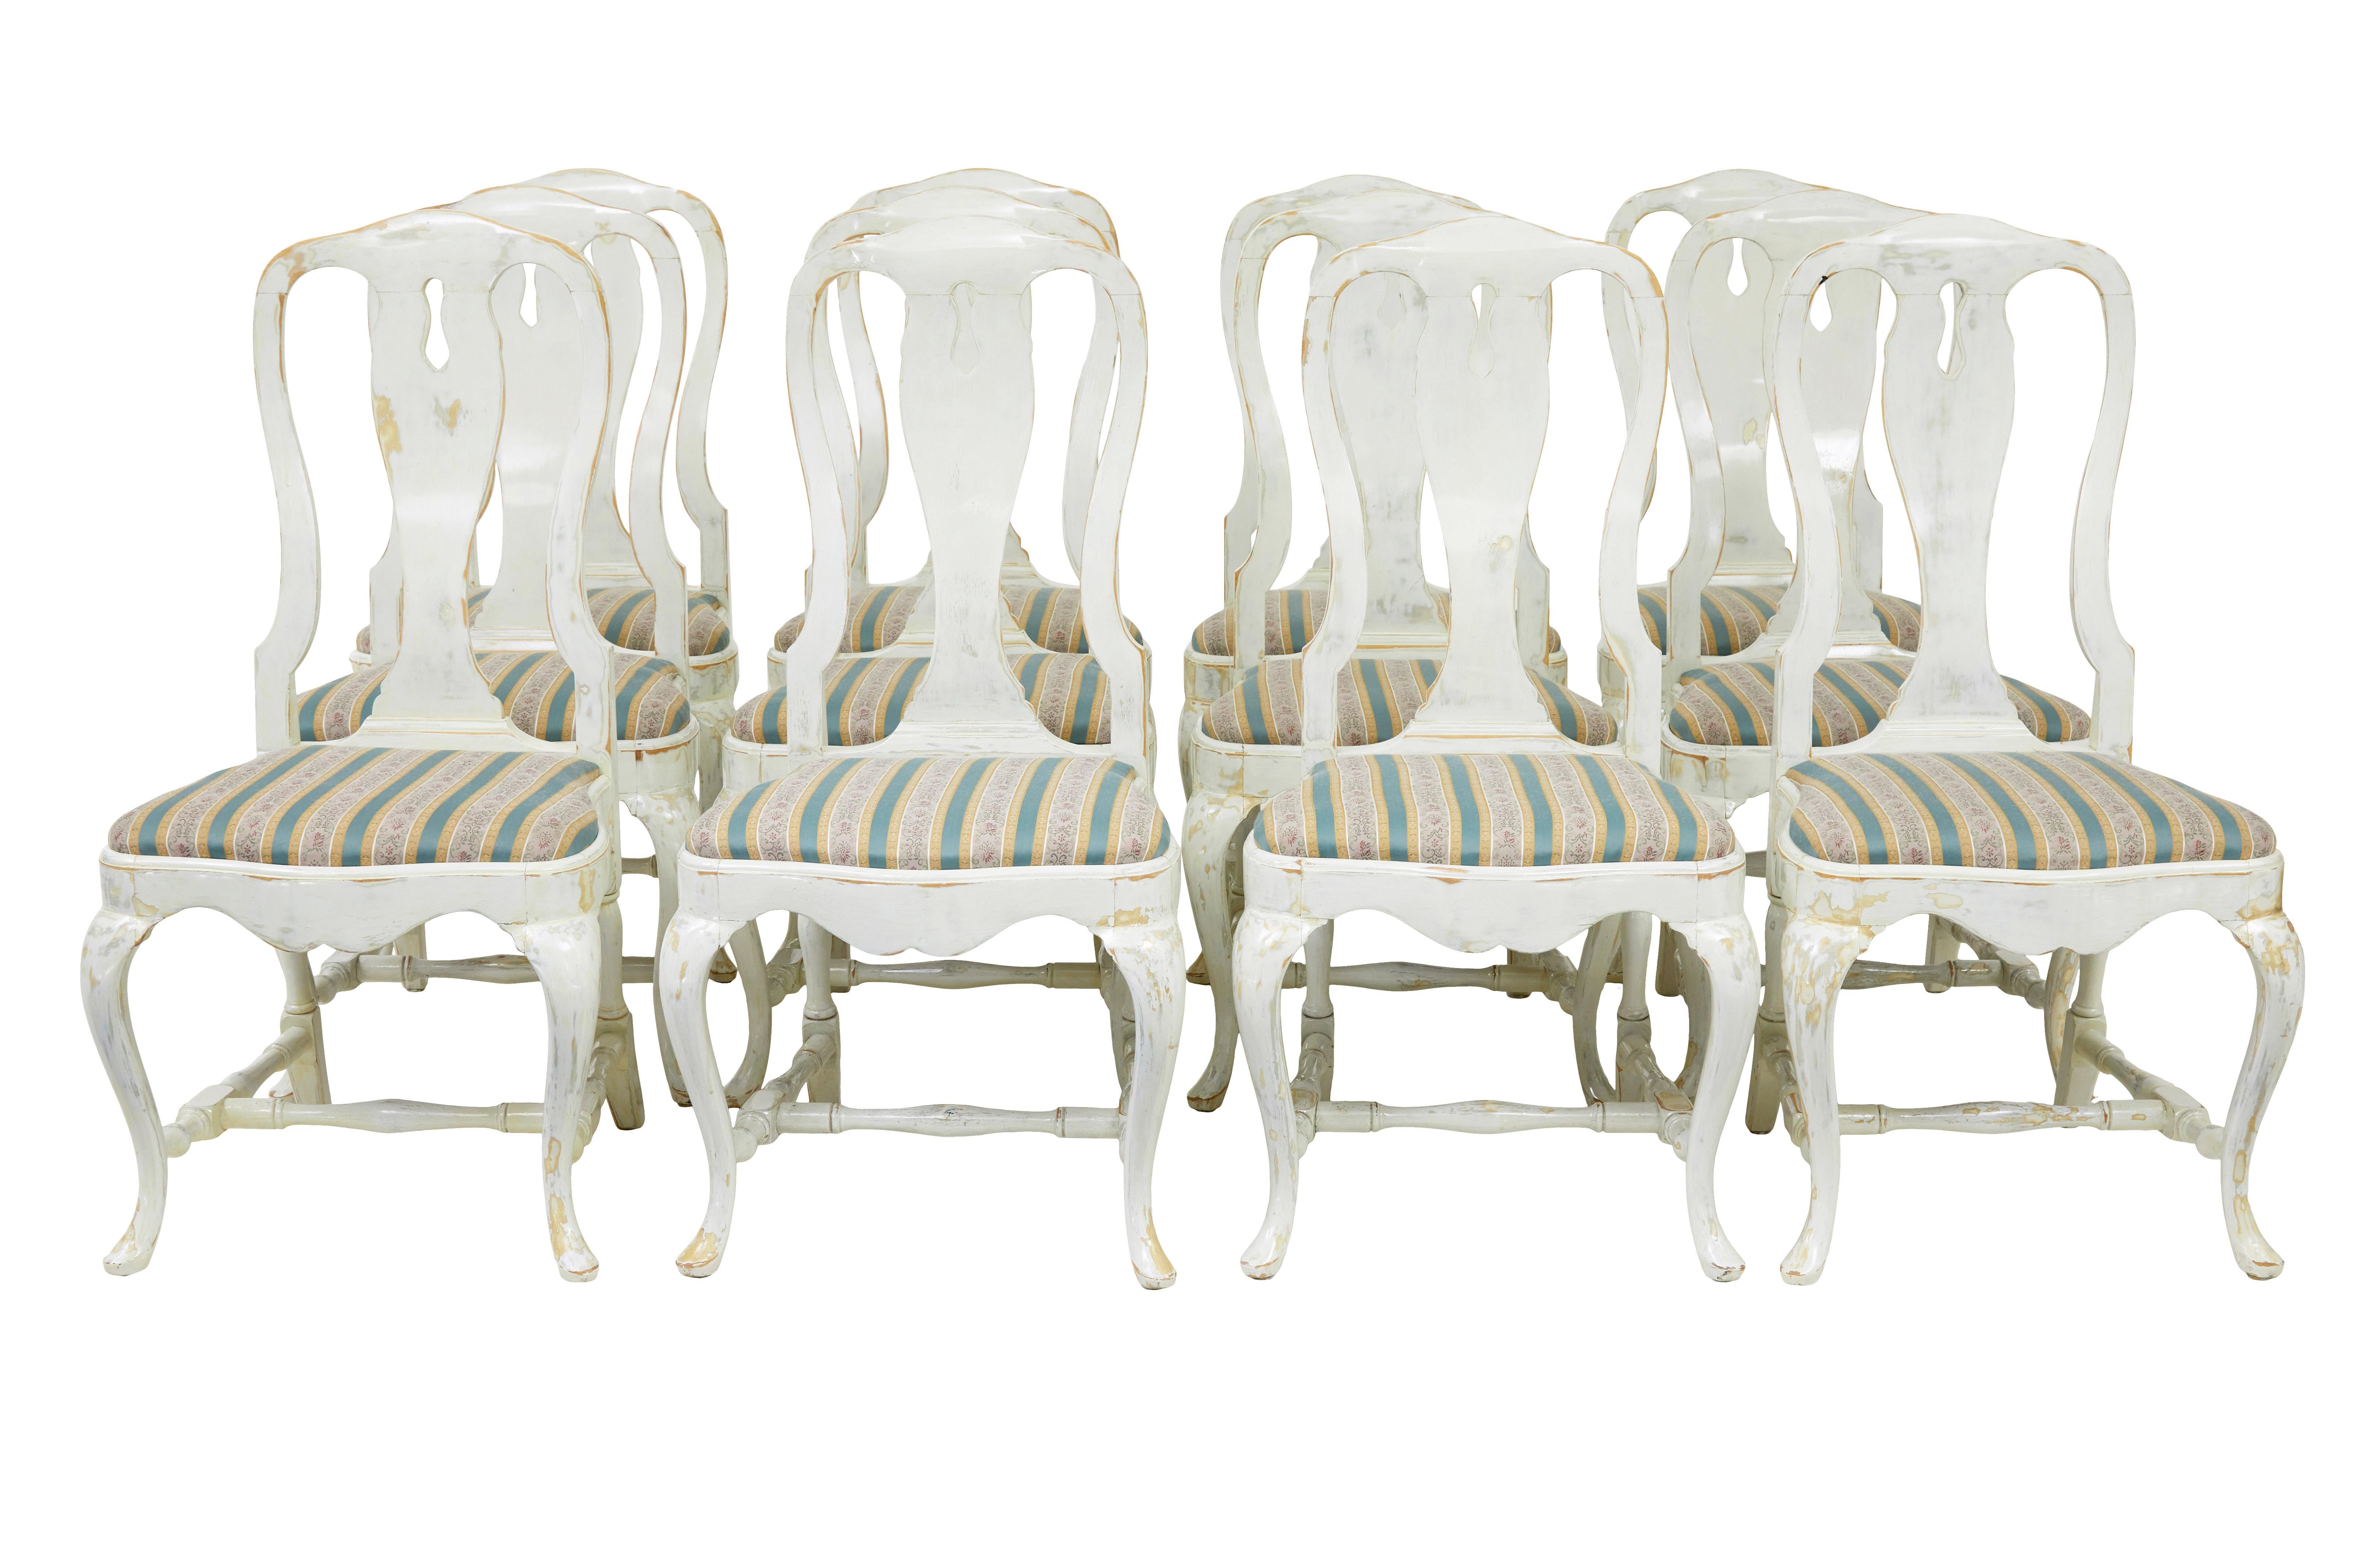 Satz von 14 lackierten Esszimmerstühlen im Queen-Anne-Stil um 1920.

Das Set besteht aus 12 Einzelstühlen und 2 Schnitzersesseln.  Aus Buche gefertigt und später weiß gestrichen, wurde die Farbe an einigen Stellen durchgescheuert, um einen